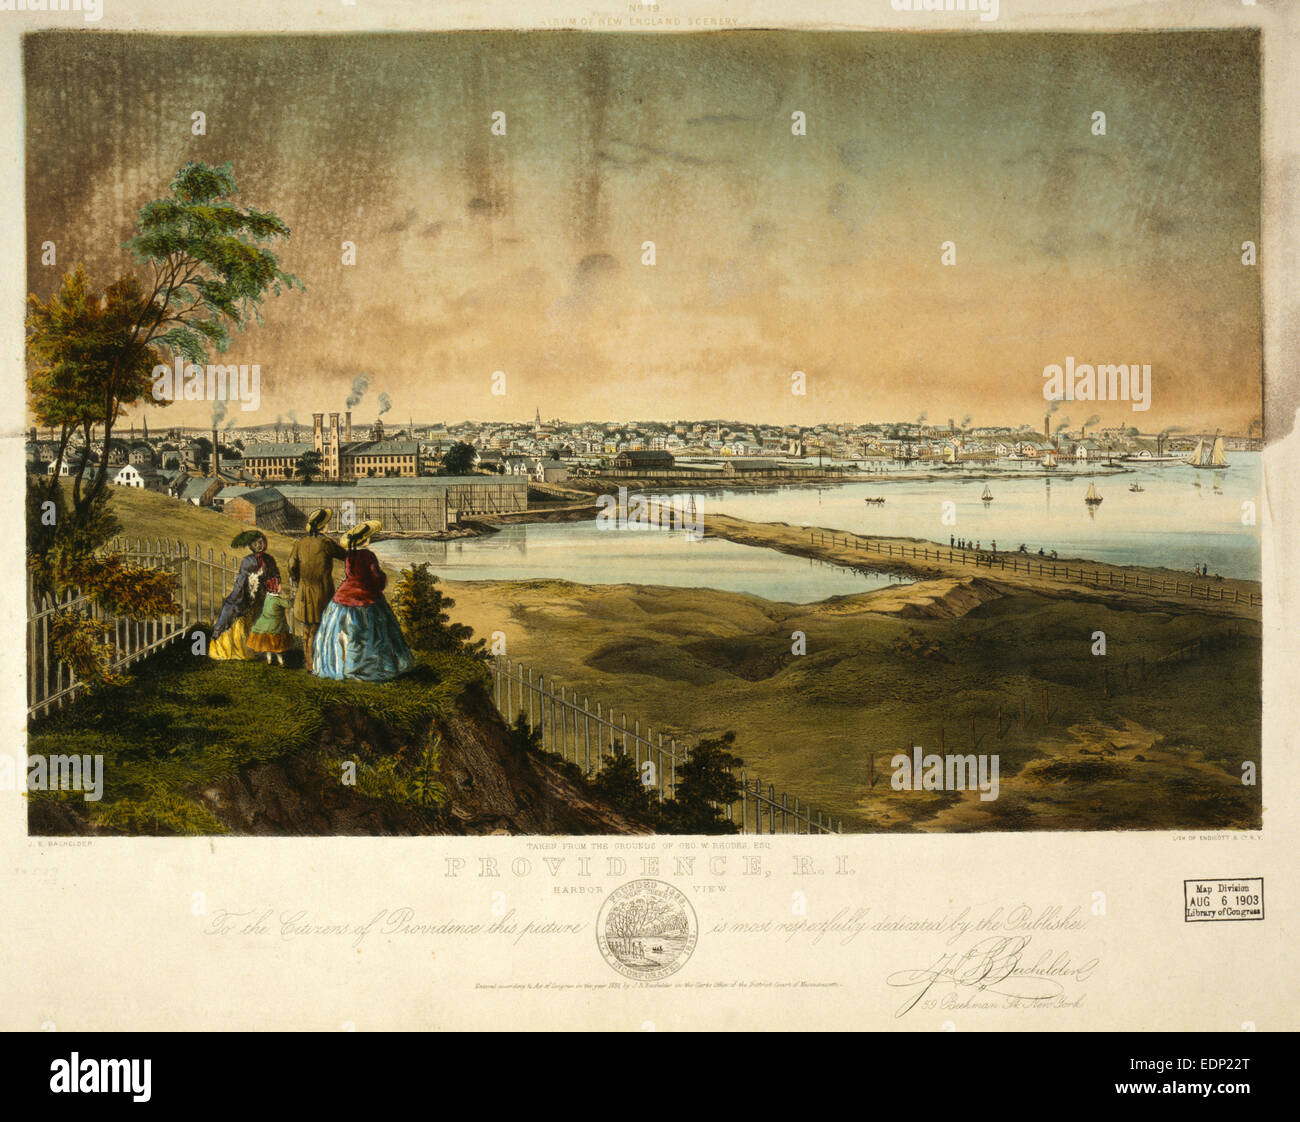 Providence, R.I., vue sur le port, prises à partir des terrains de Geo. W. Rhodes, Esq. / J.B. Bachelder ; lith. d'Endicott & Co., New York) Banque D'Images